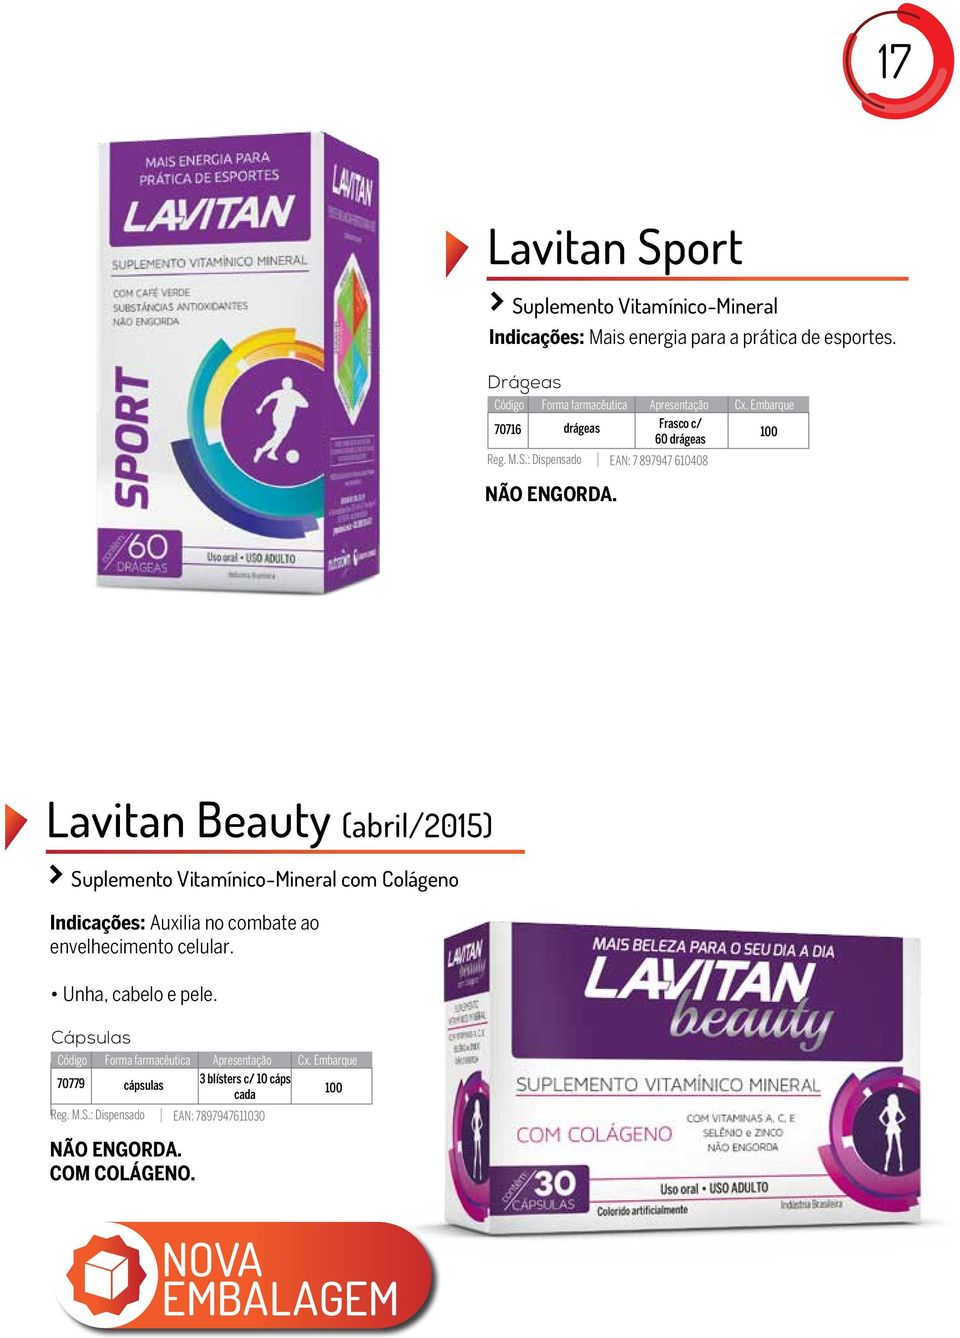 Lavitan Beauty (abril/2015) Suplemento Vitamínico-Mineral com Colágeno Indicações: Auxilia no combate ao envelhecimento